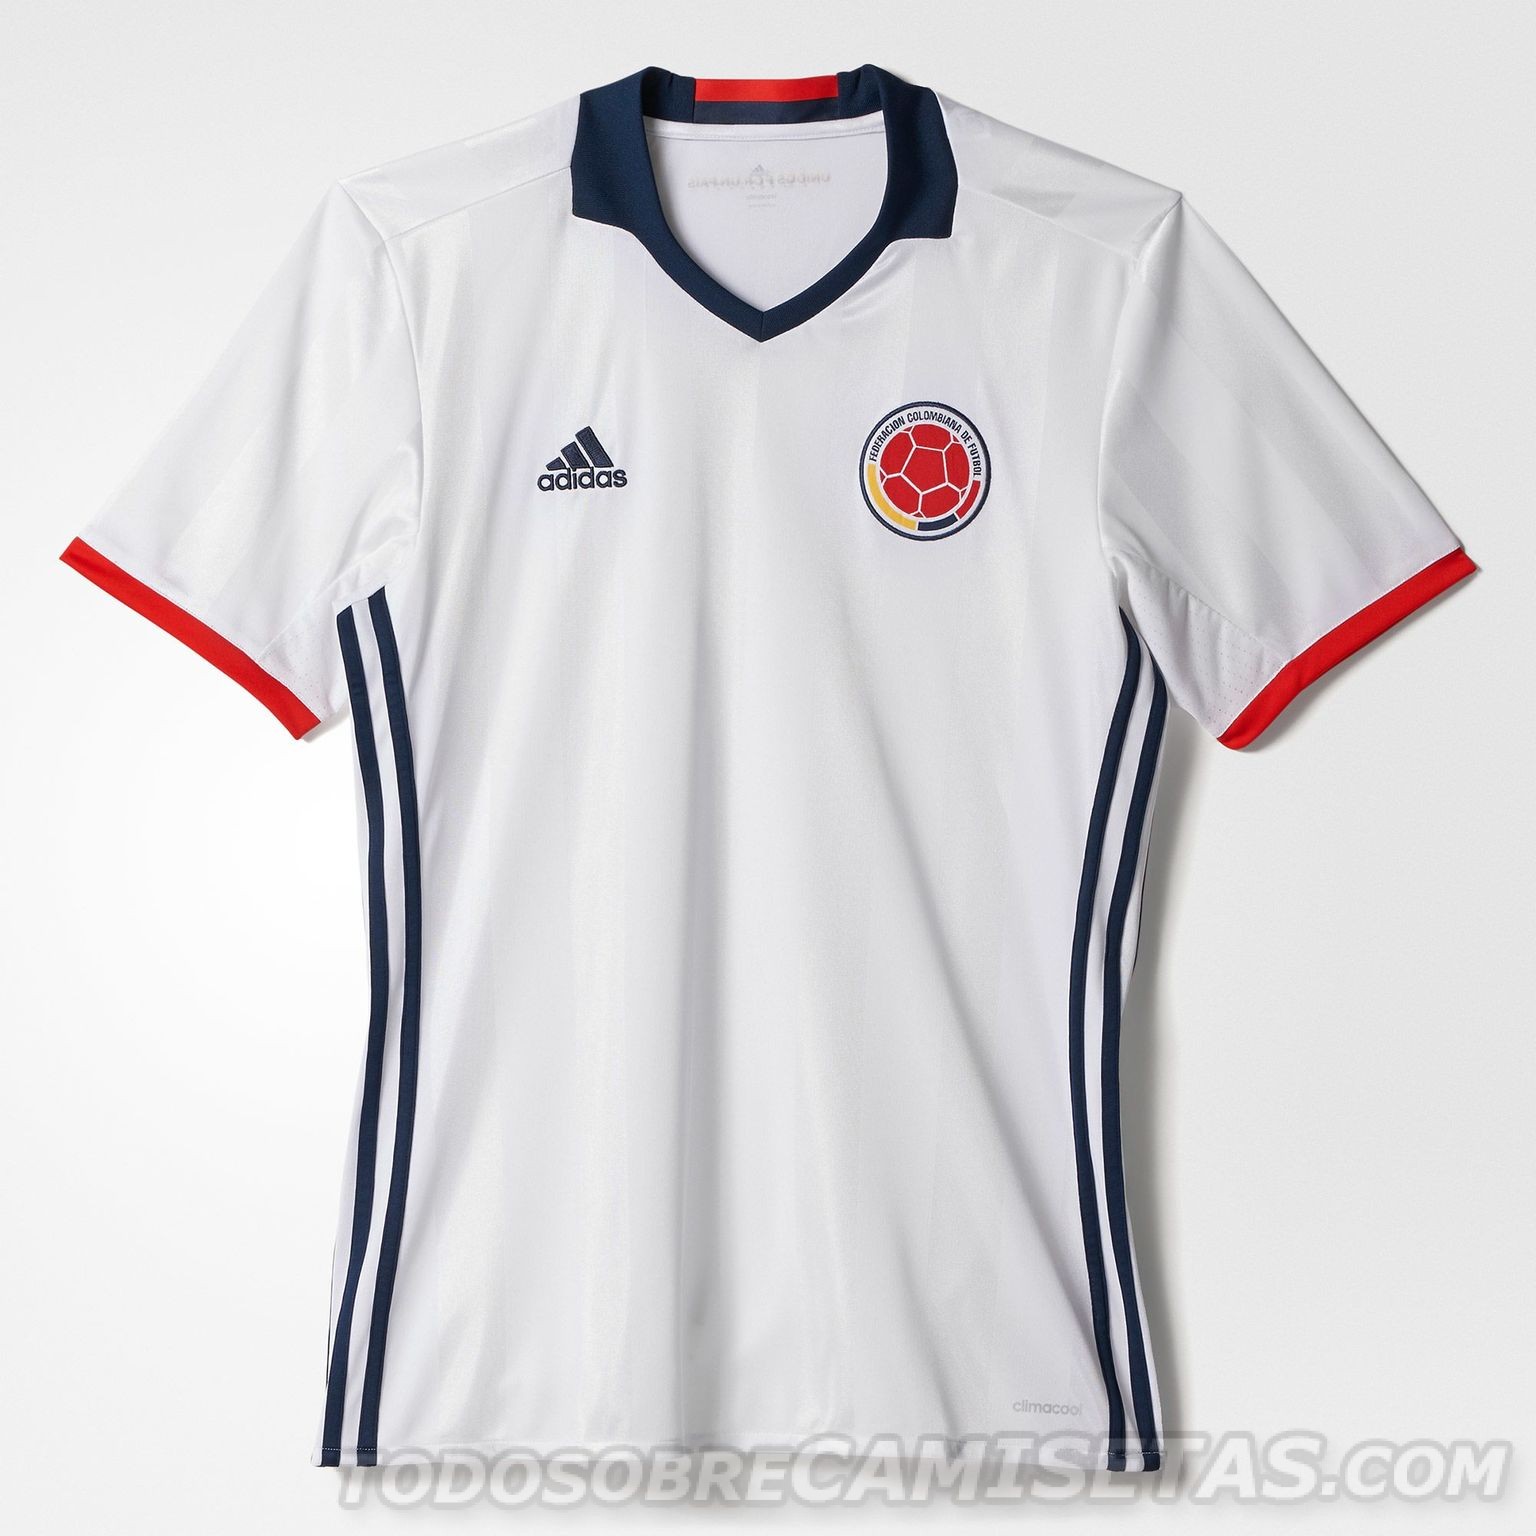 Camiseta adidas de Colombia Edición Especial 2016